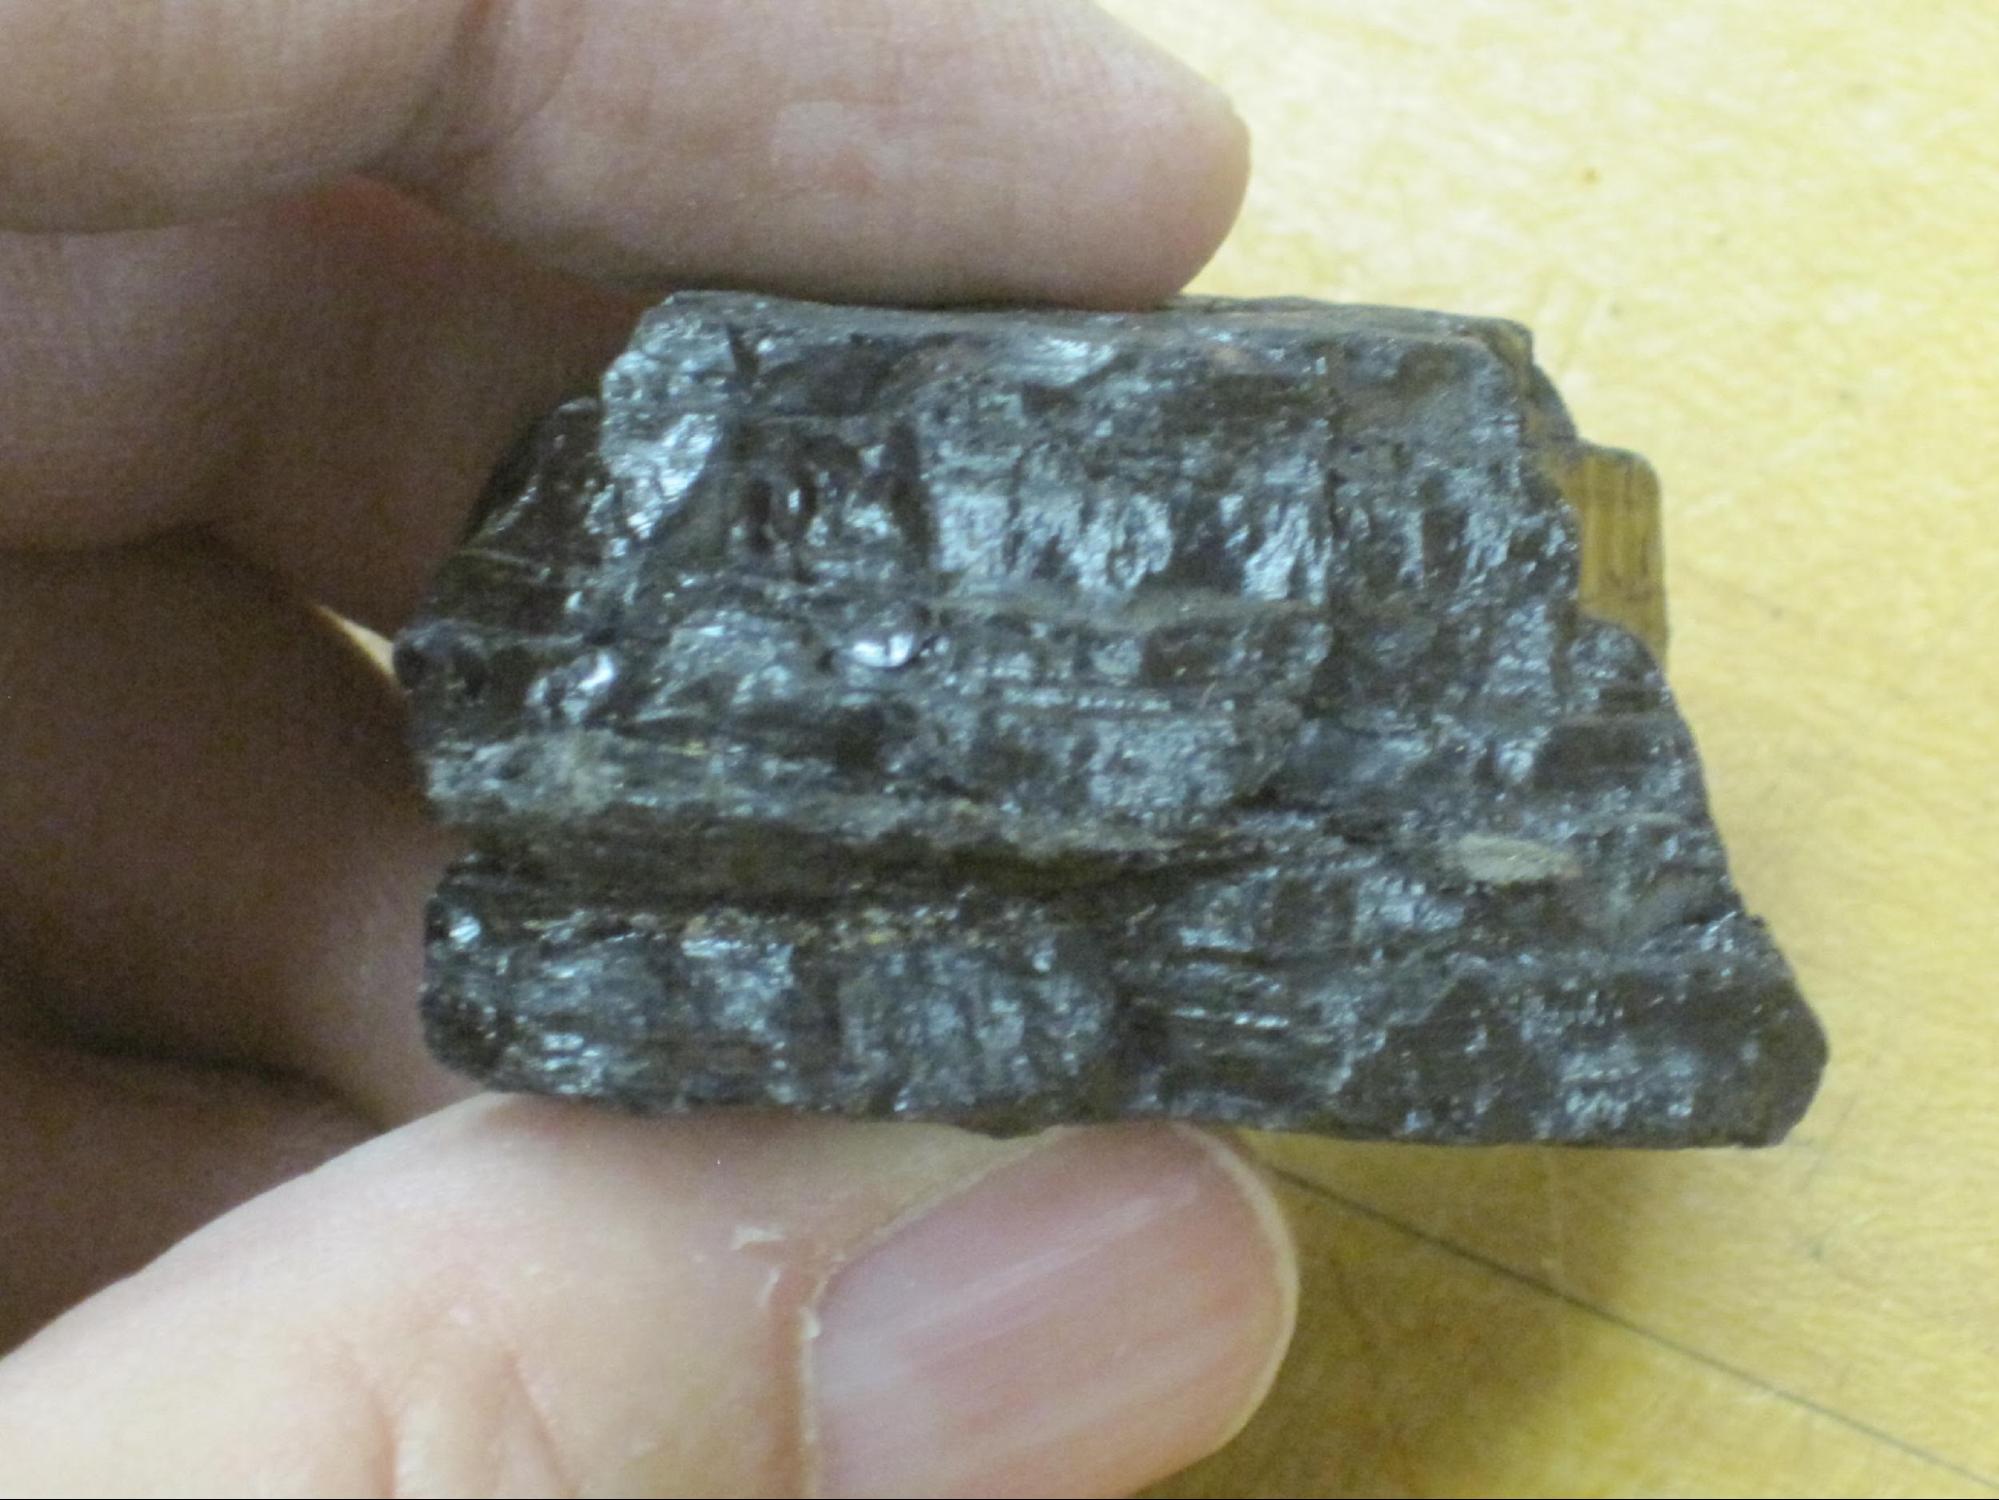 Anthracite coal